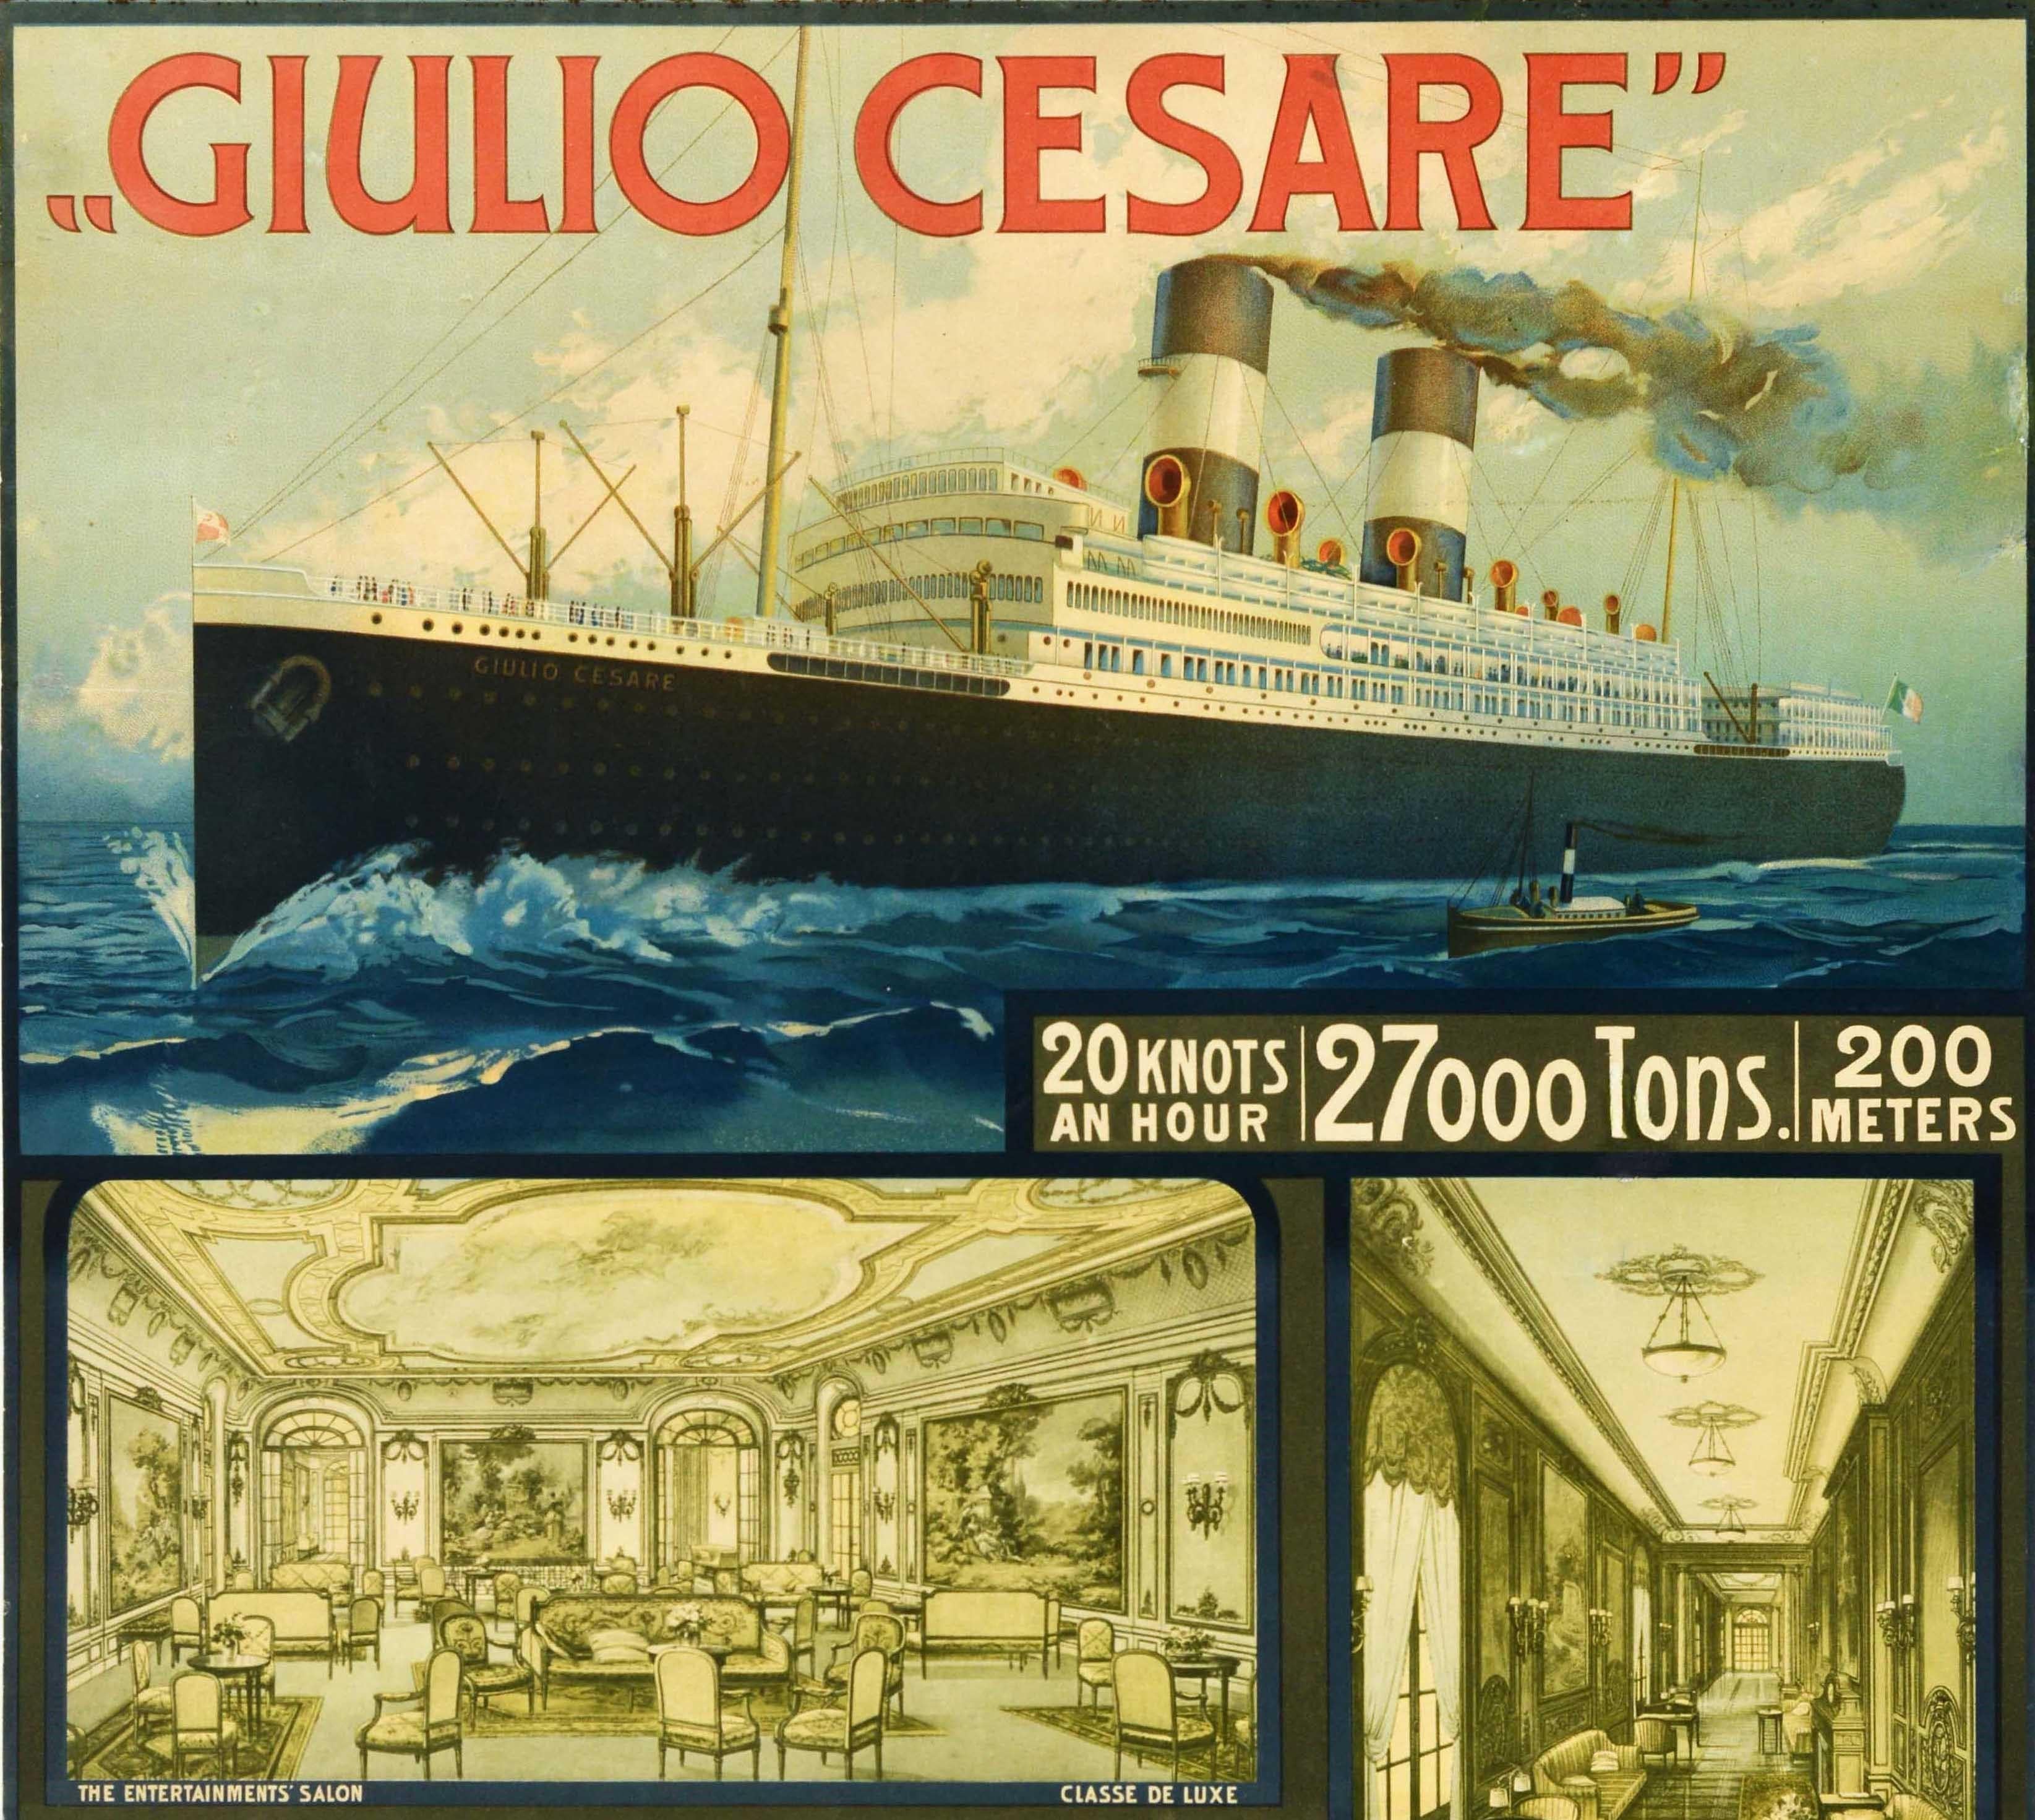 Affiche originale de croisière - Giulio Cesare Genoa Buenos Ayres Navigazione Generale Italiana - présentant une image du paquebot en mer au-dessus de vues plus petites montrant la vie de la Classe de Luxe à bord du SS Giulio Cesar (lancé en 1920),